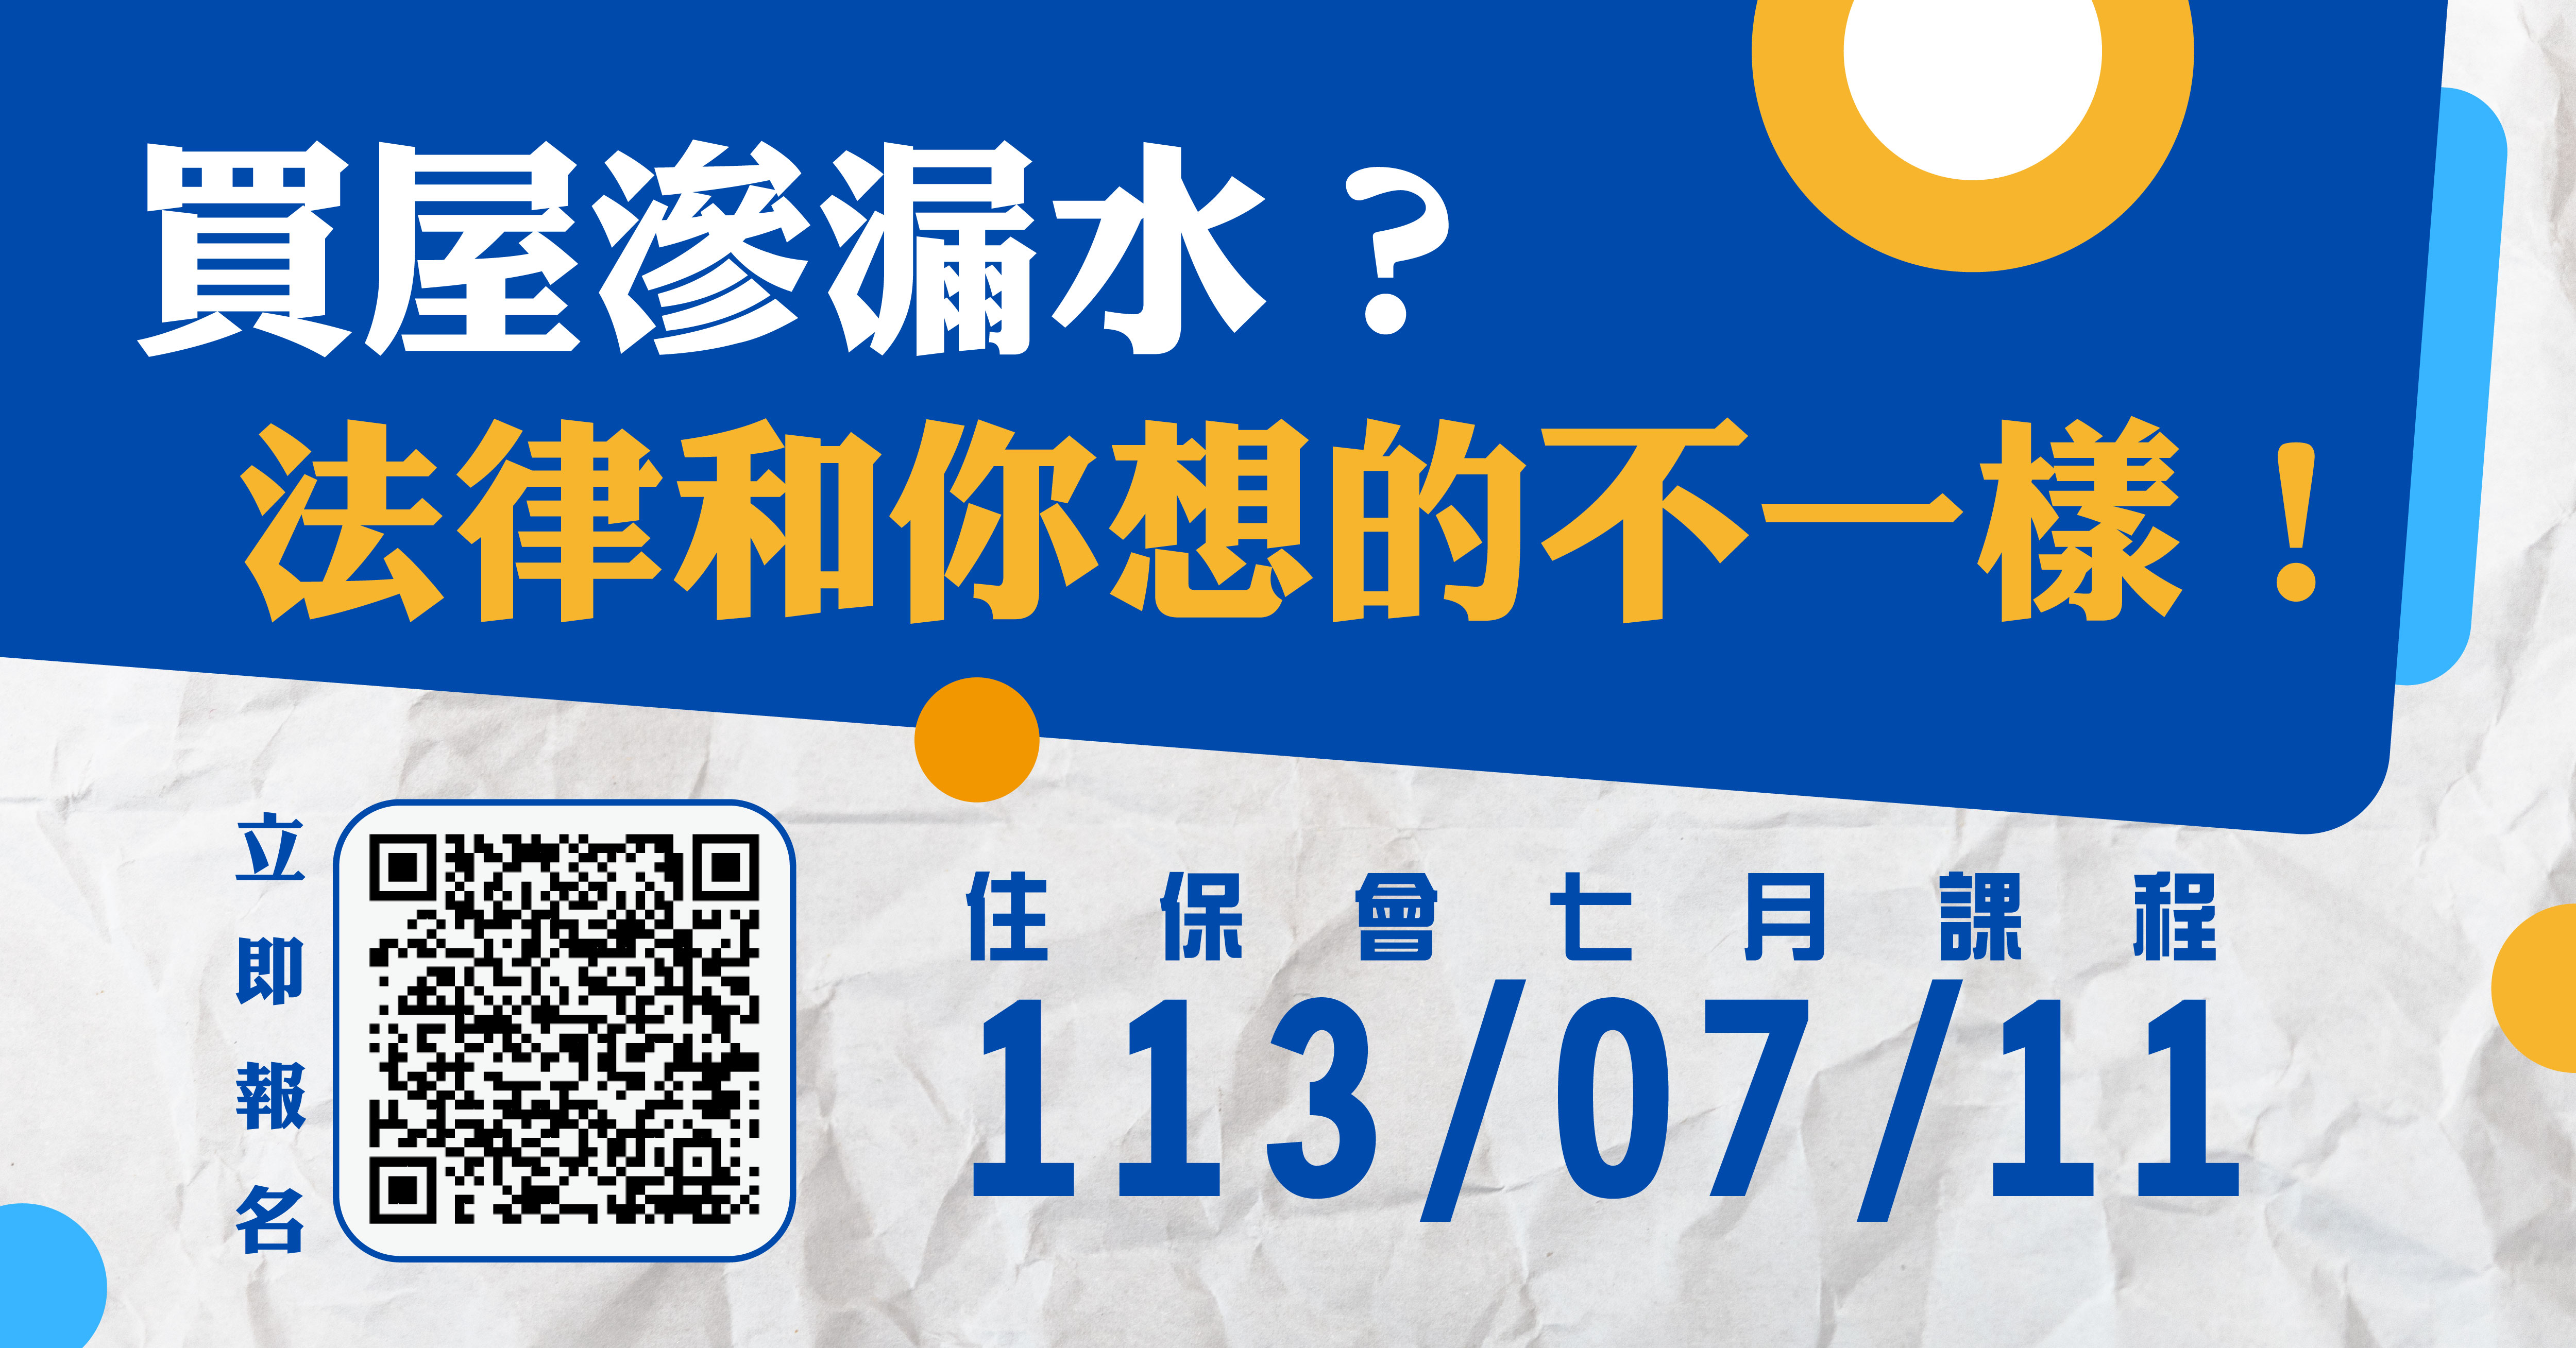 台灣住宅品質消費者保護協會